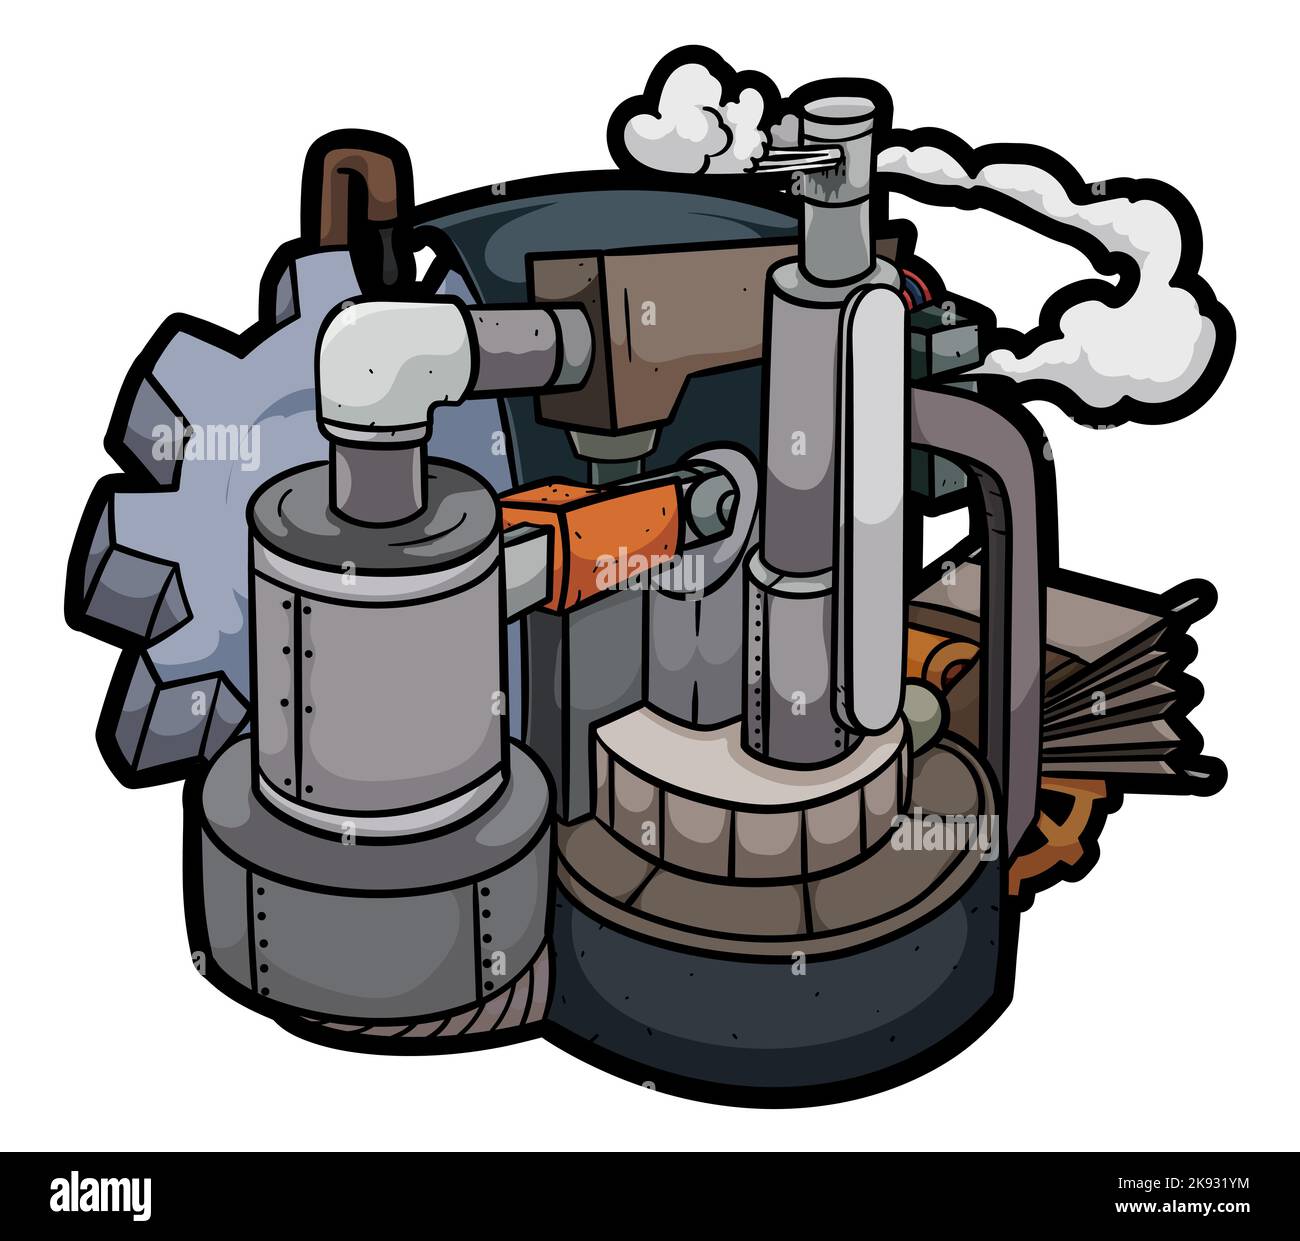 Máquina de vapor de estilo steampunk con engranajes, tanques, tuberías, tubos, fuelles y chimenea de vapor. Ilustración del Vector